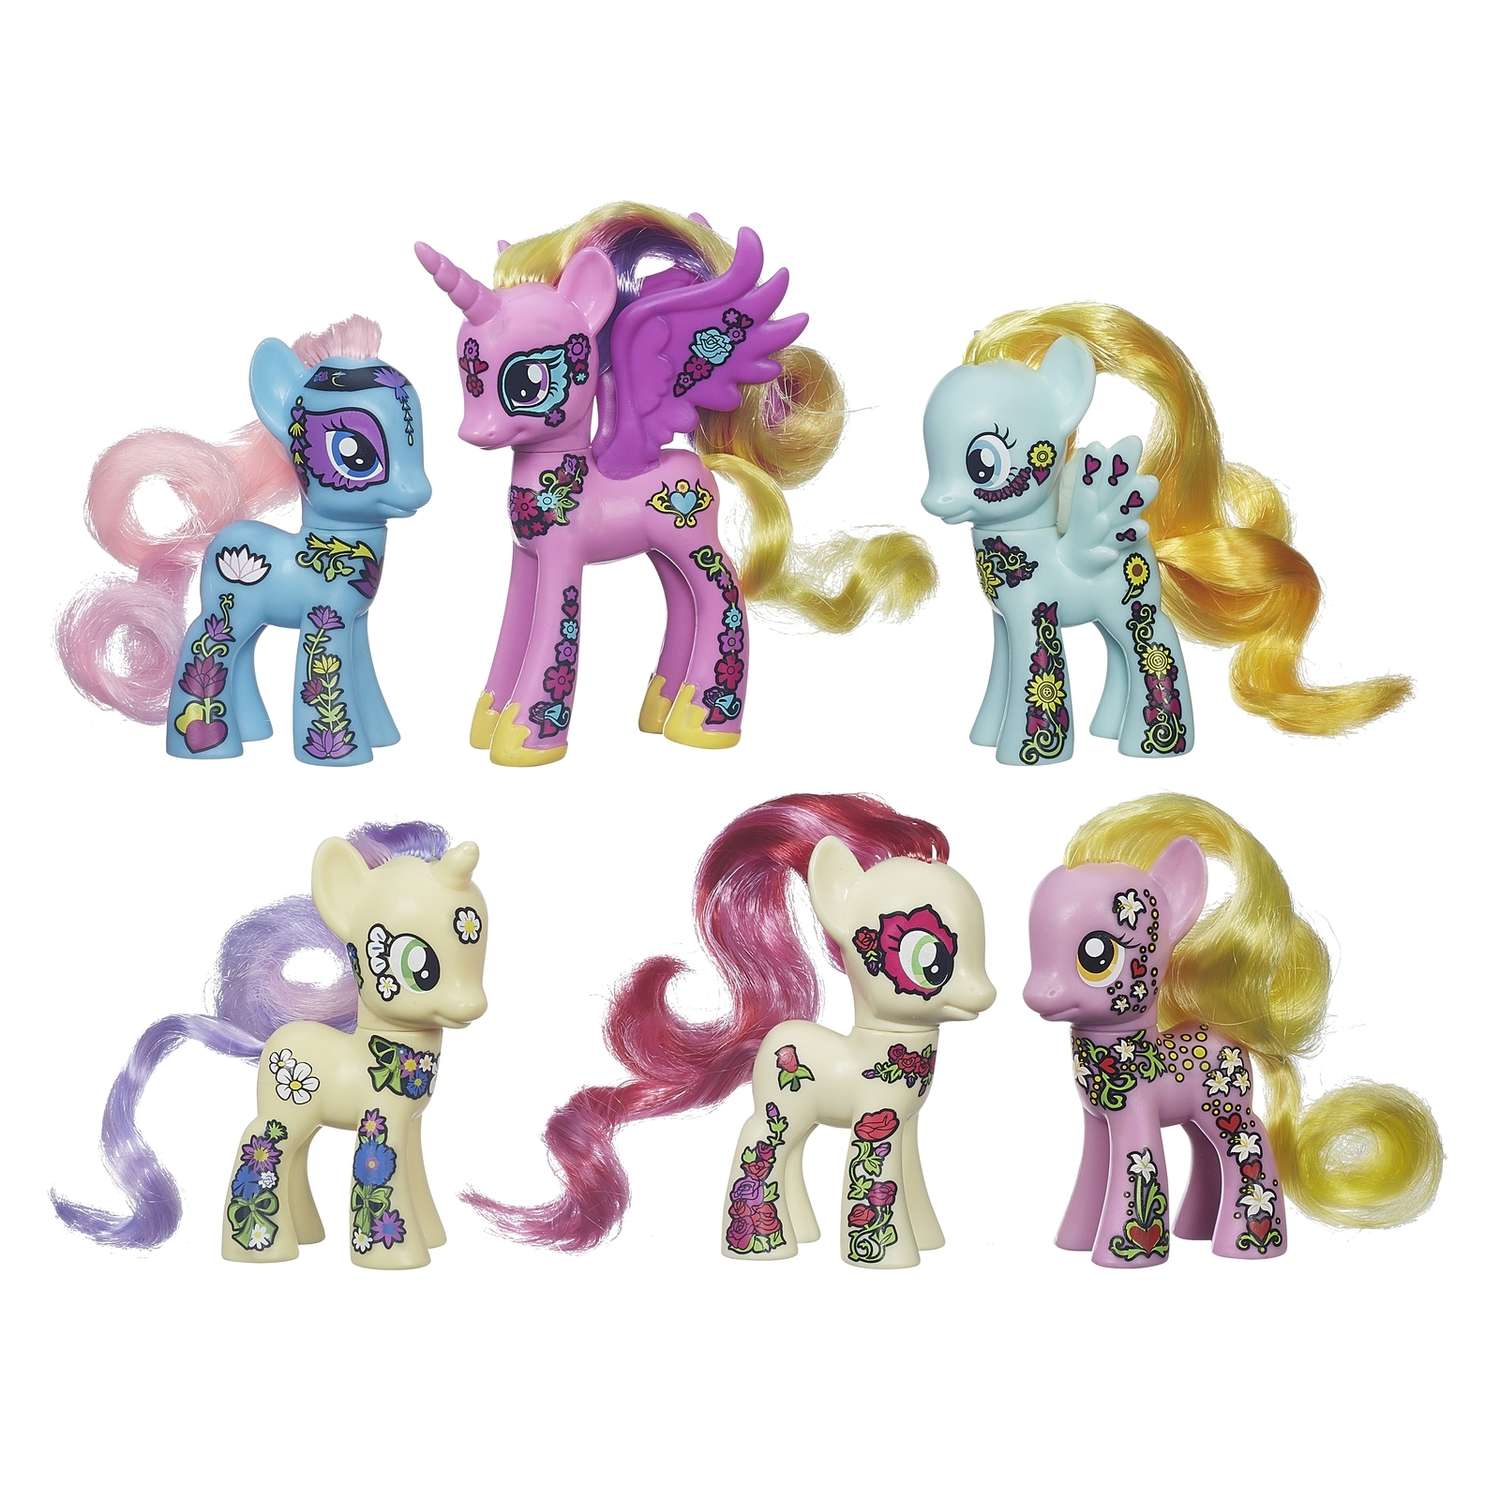 Новые игрушки май литл пони. Набор 6 пони Ponymania. My little Pony набор Ponymania. Ponymania Friendship Blossom. МЛП набор блоссом.